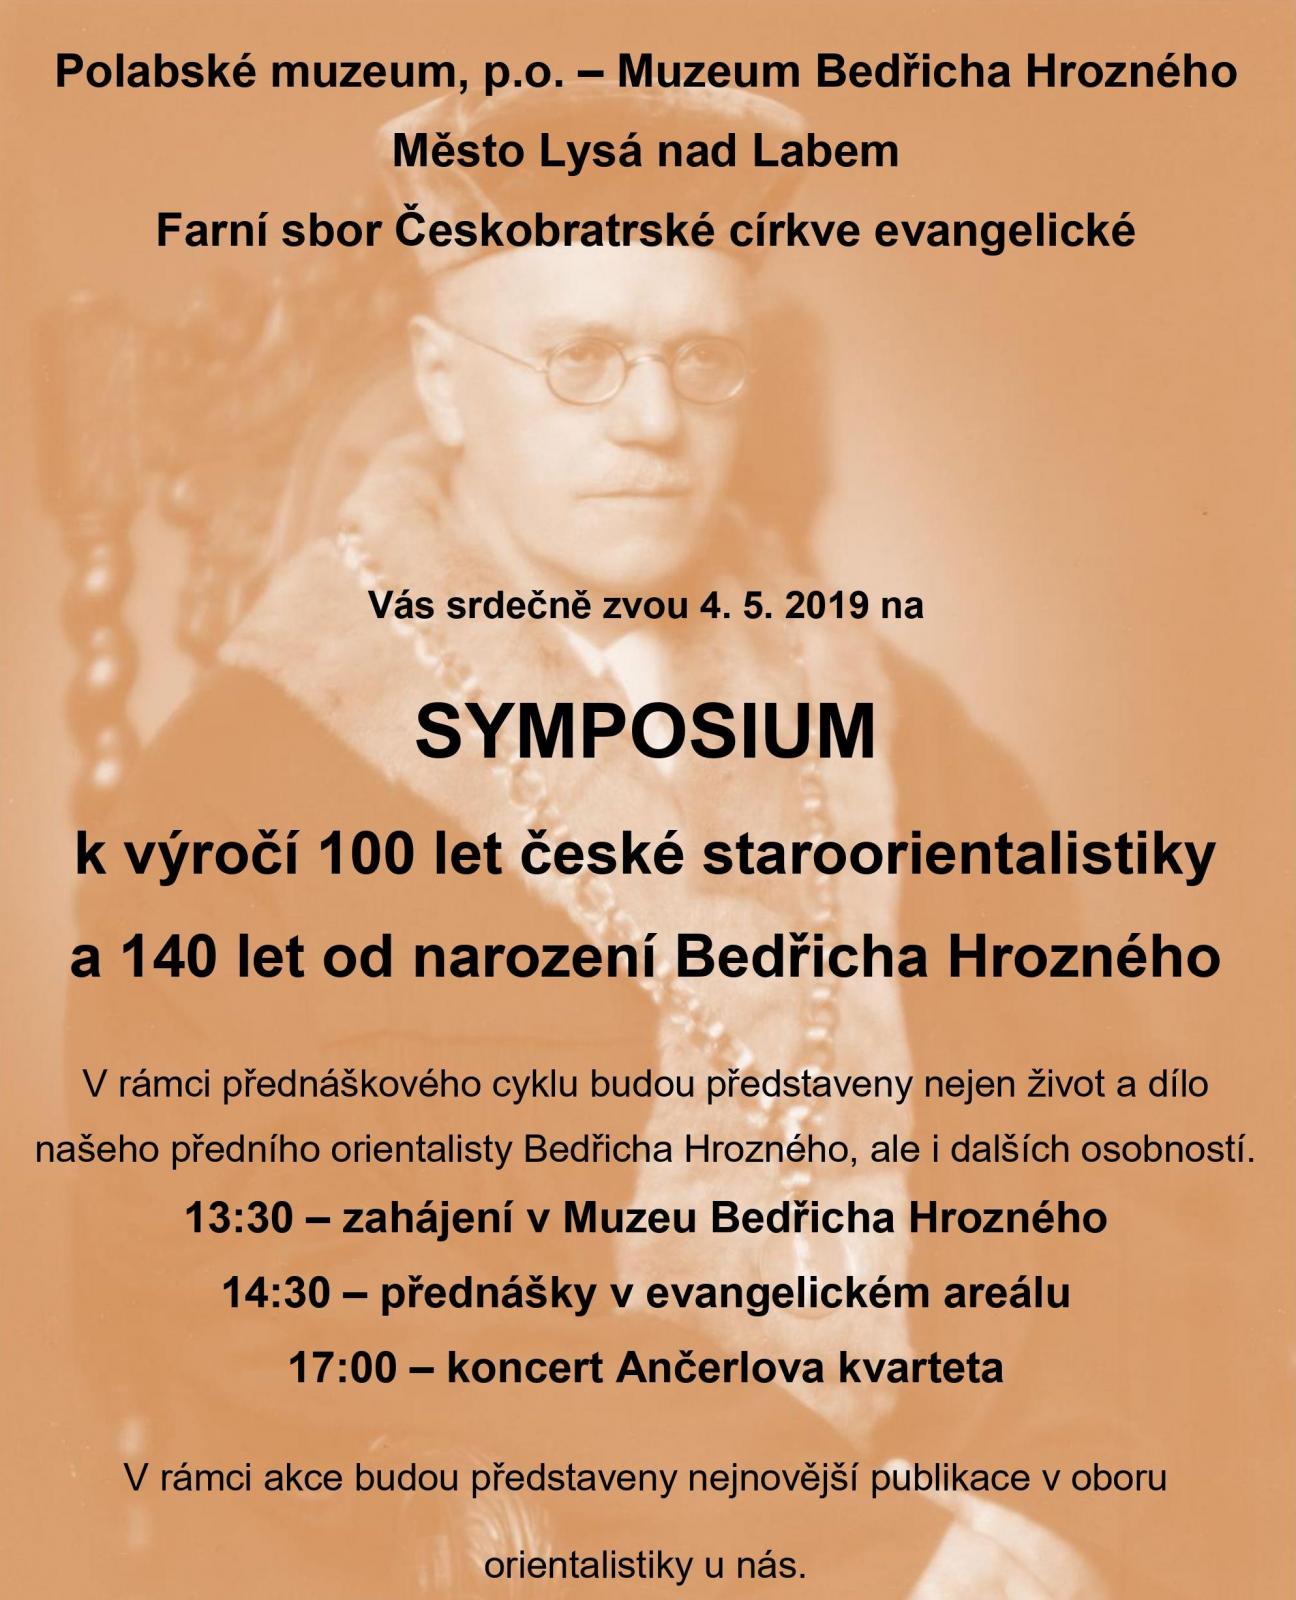 Symposium k výročí 100 let české staroorientalistiky 2019